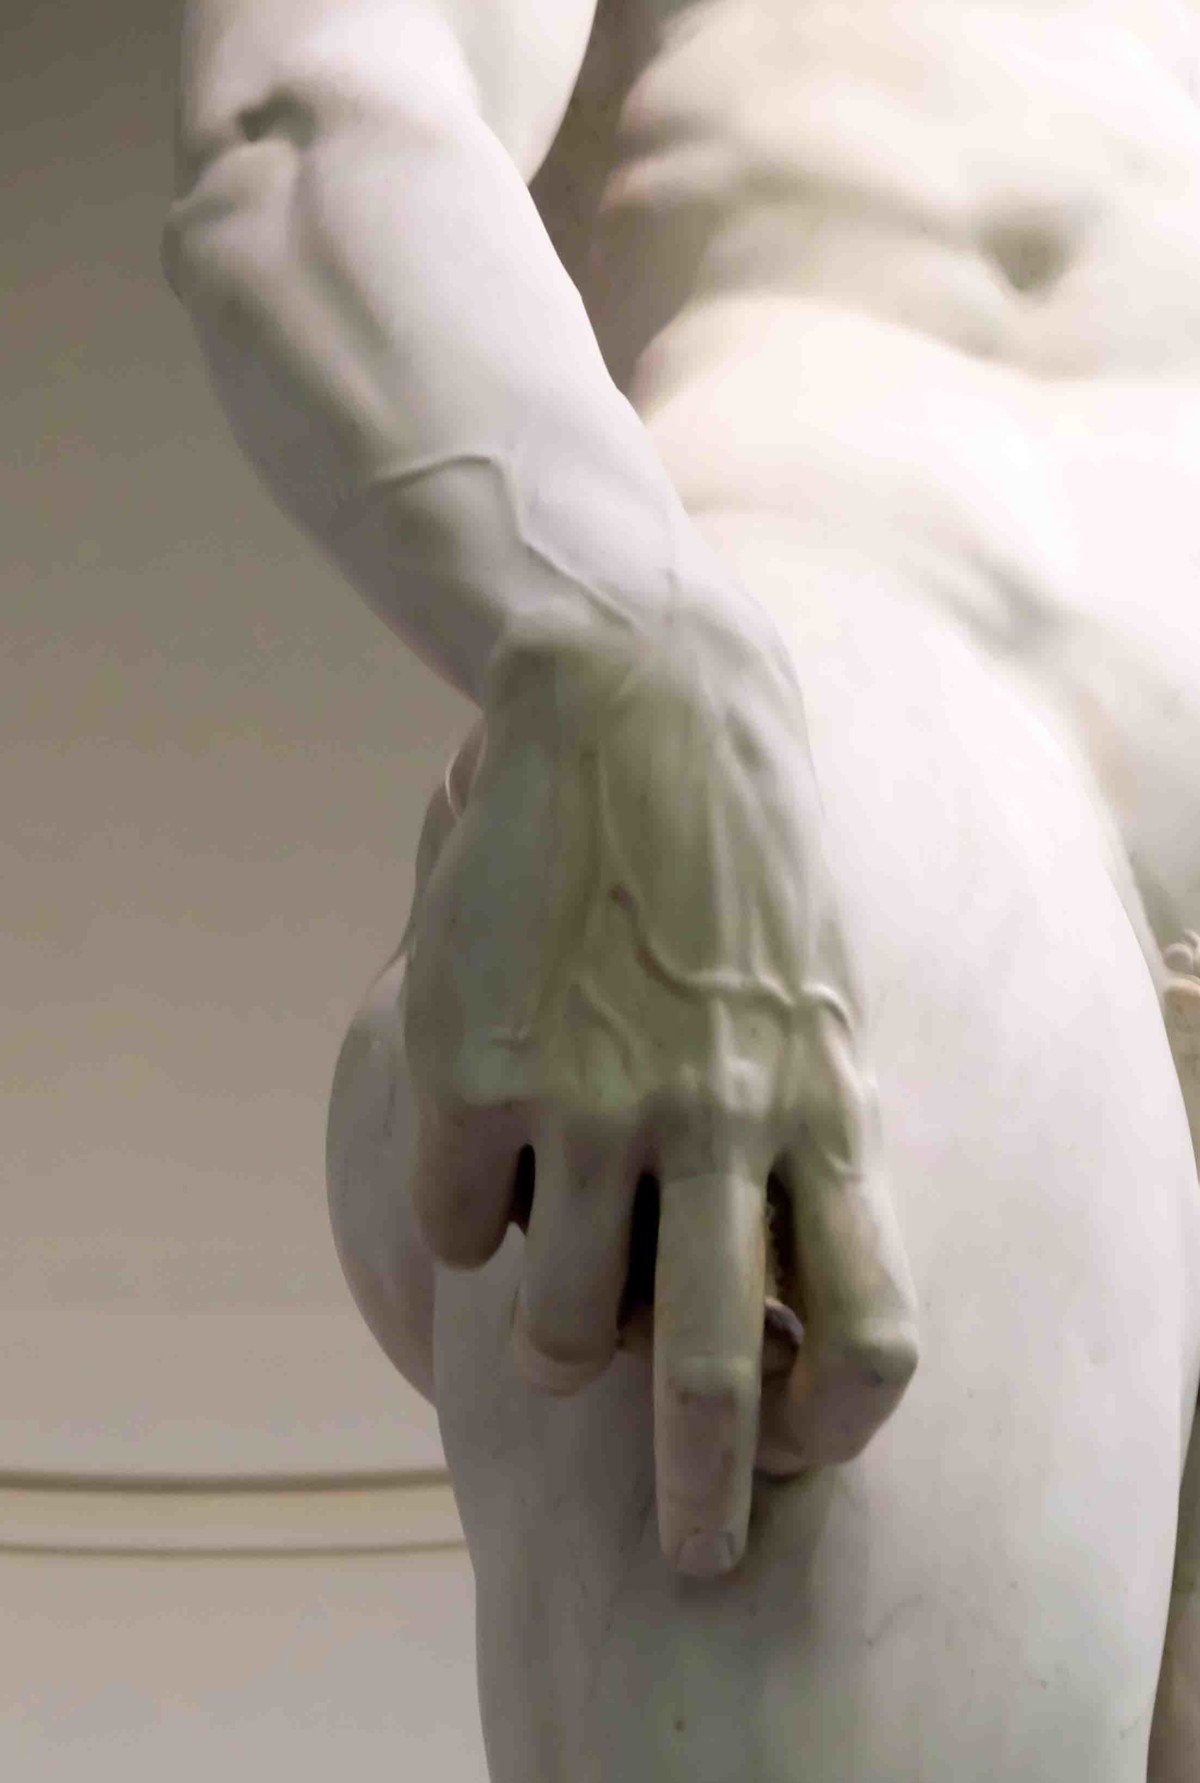 The hand of Michelangelo's David 